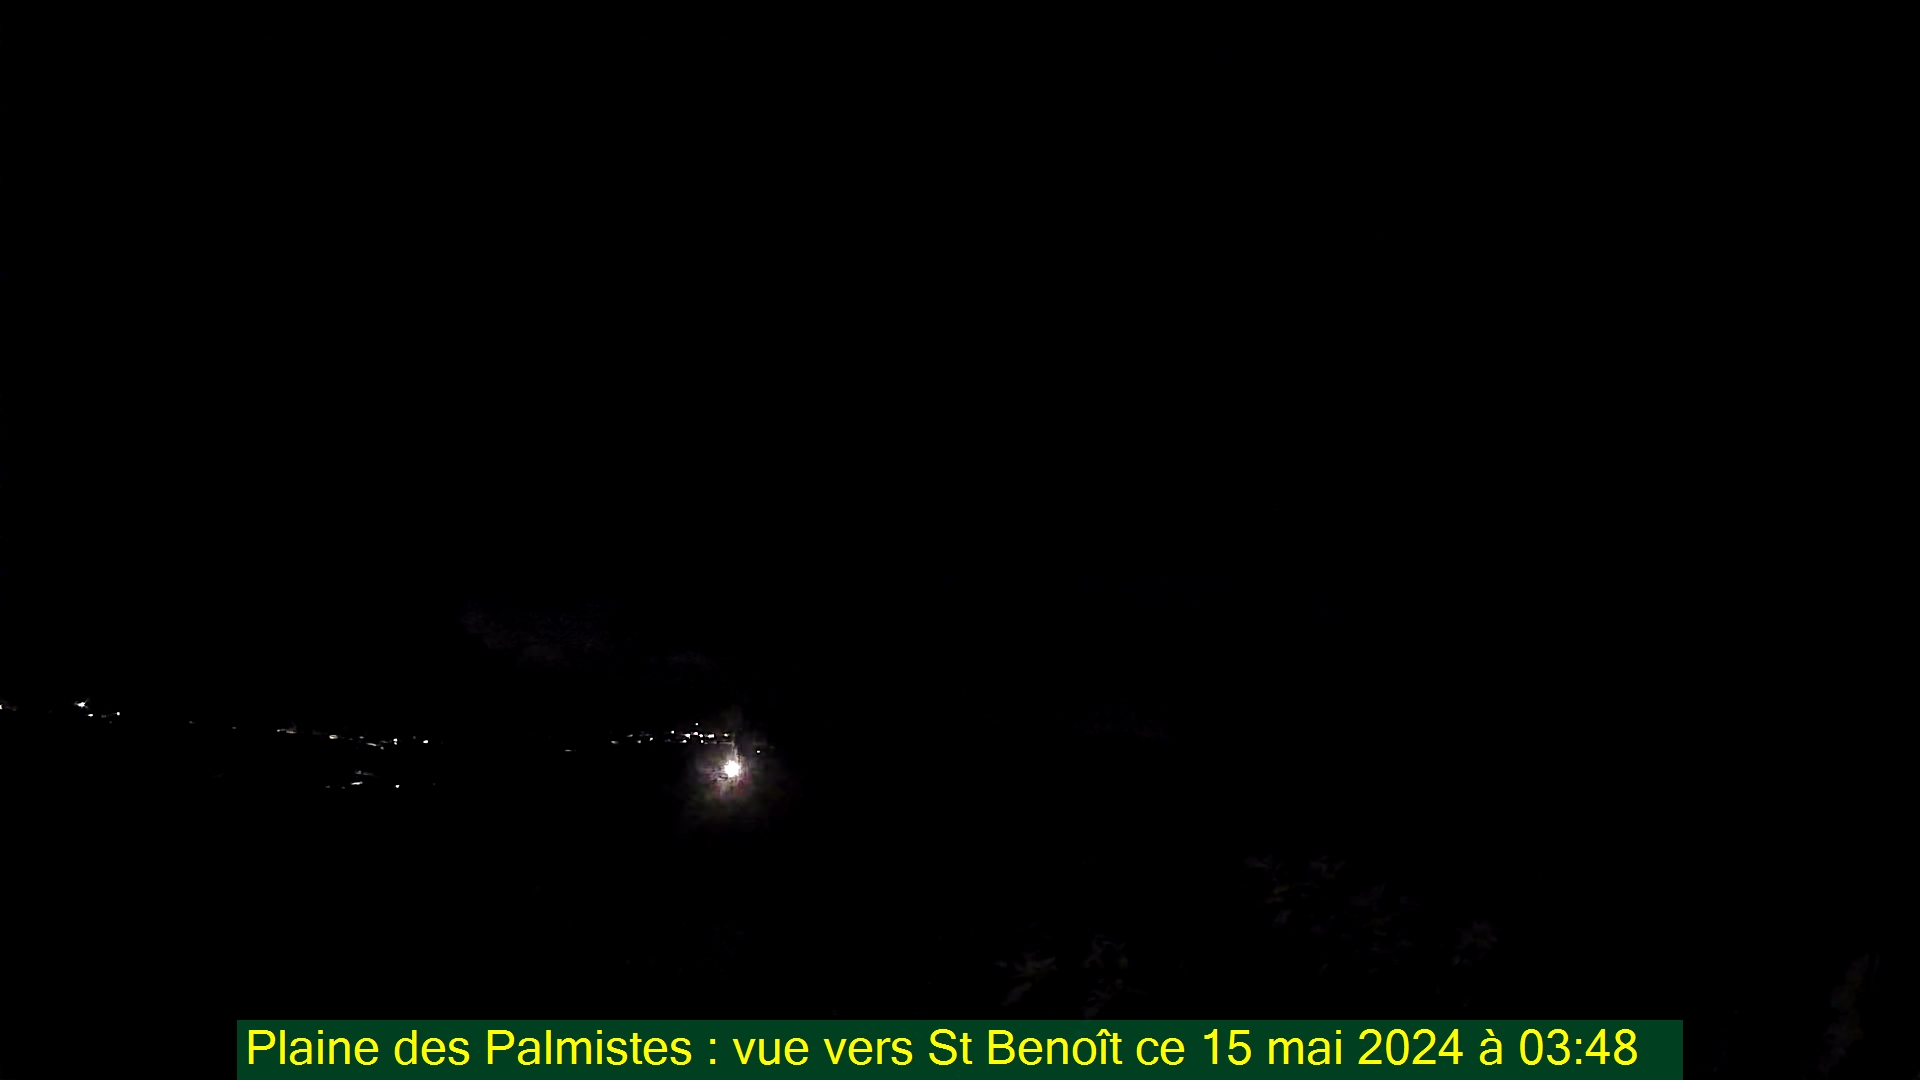 Saint-Denis (Réunion) Søn. 03:50